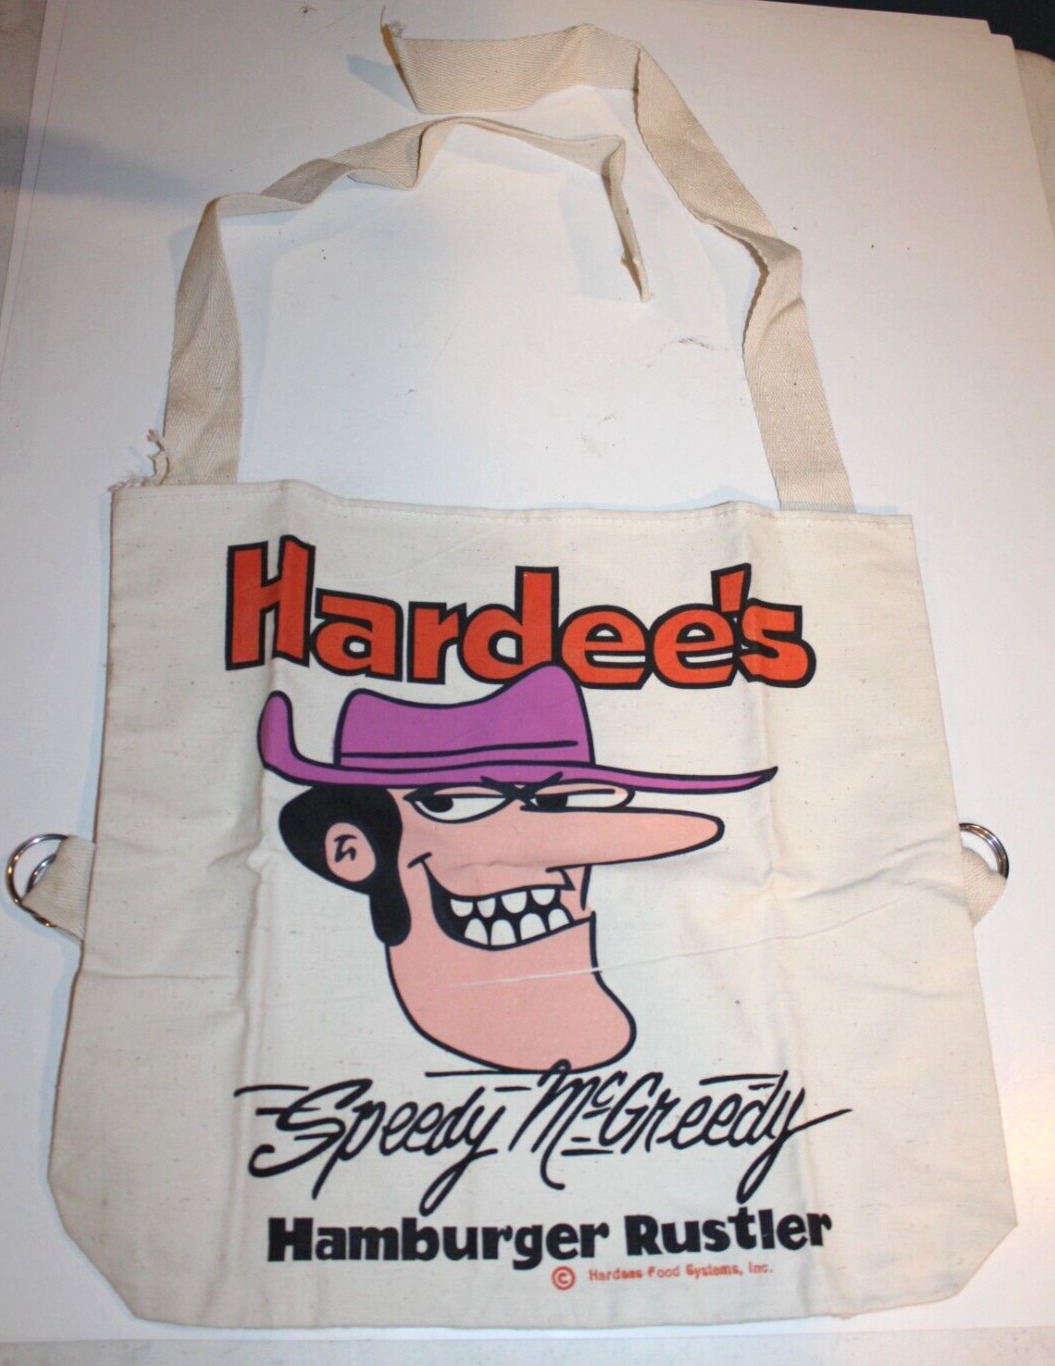 UNUSED VTG 1970s Hardee’s Speedy McGreedy Canvas Tote Backpack Hamburger Rustler